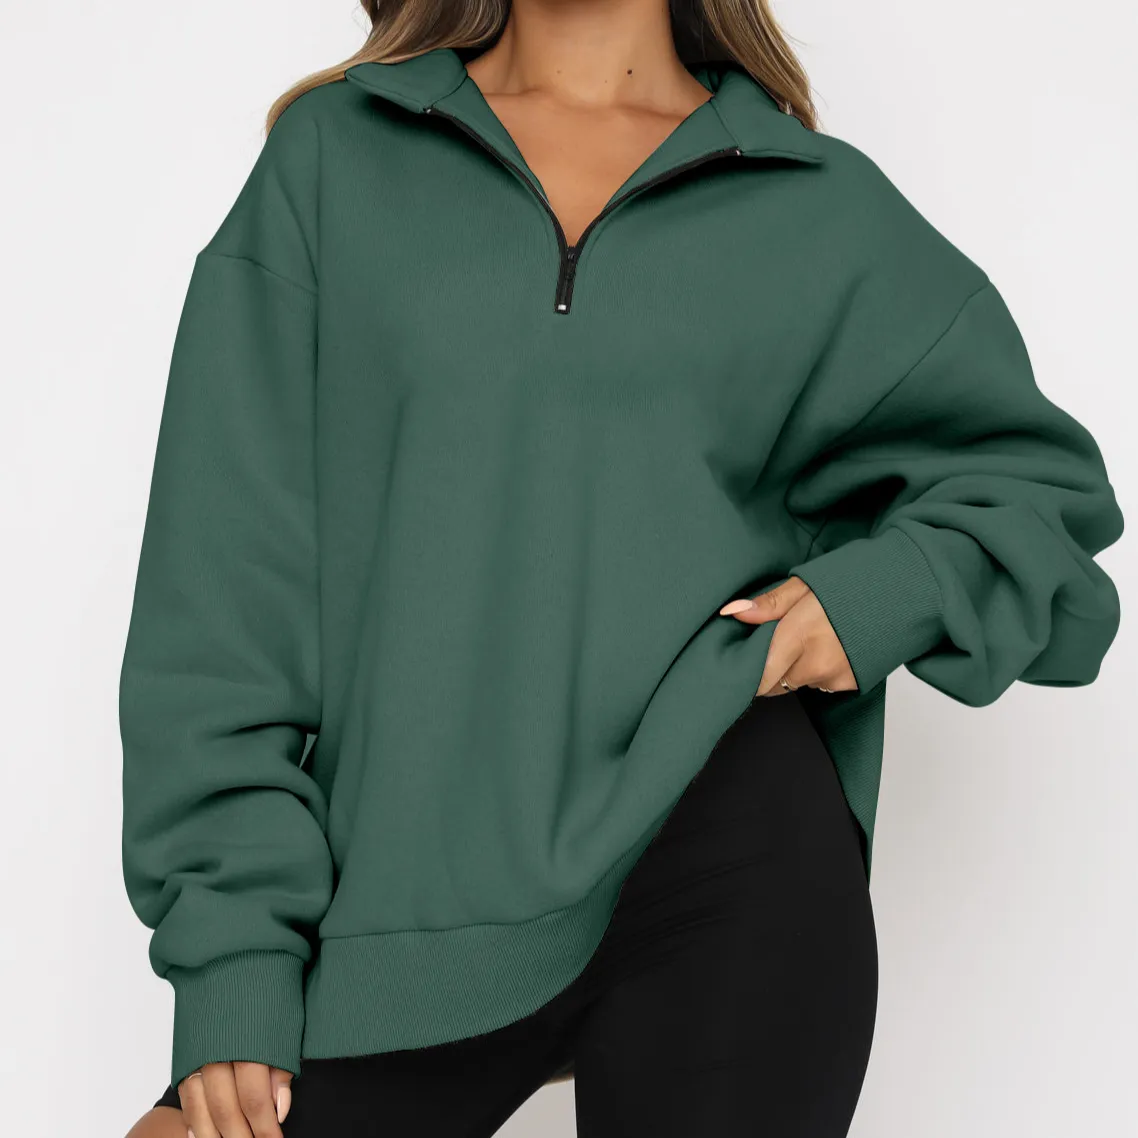 OEM Custom Wholesale Zip Up Pullover Plain Oversize Sweater 1/4 Half Zip Women'S Hoodies Sweatshirts